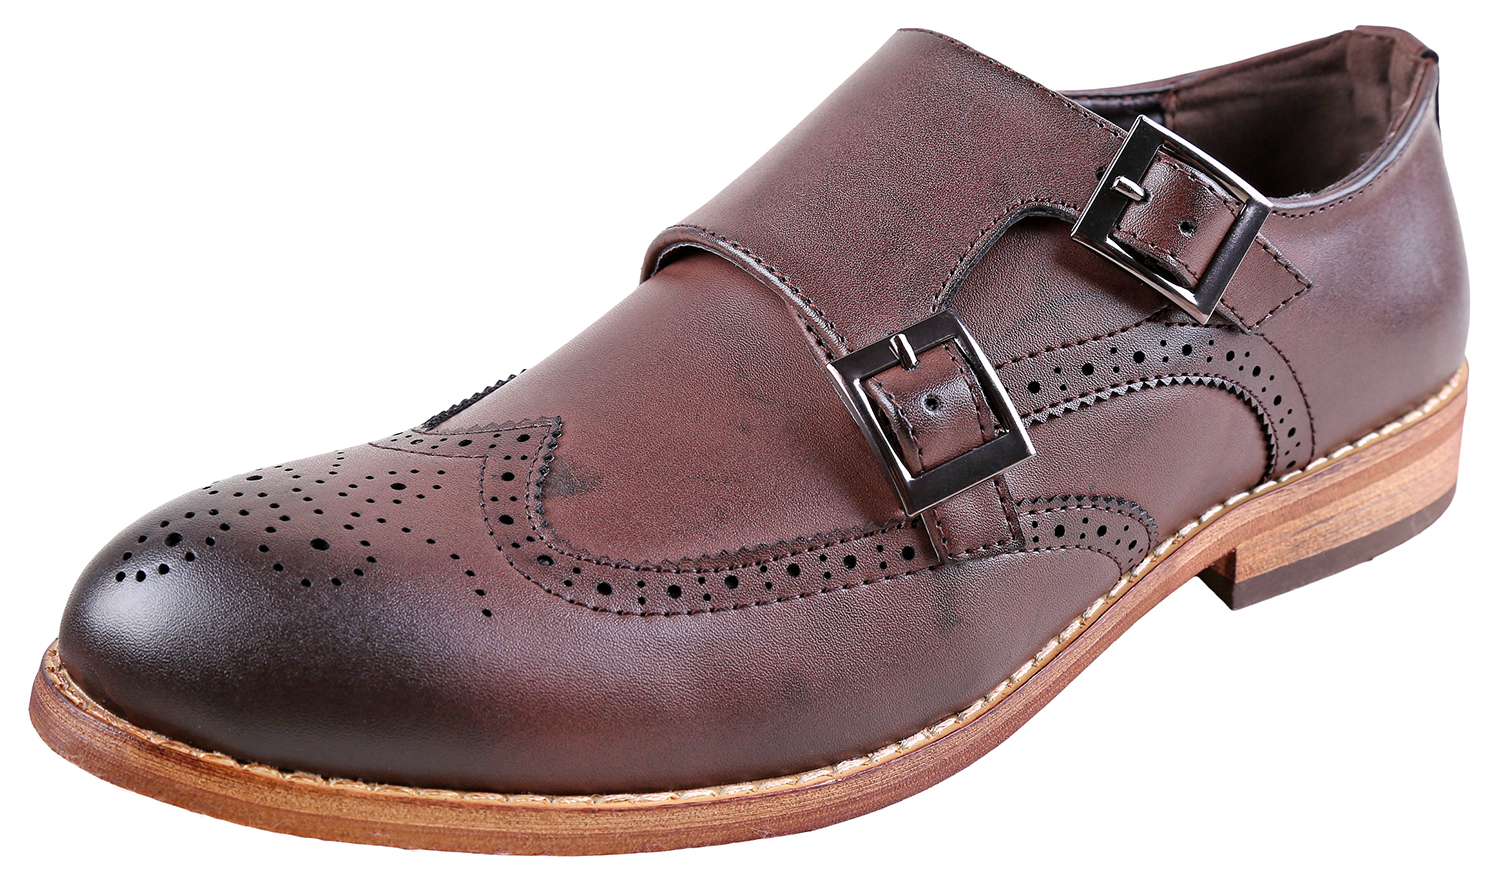 Urban Fox Allen Men's Dress Shoe | Double Monk Strap | Brogue | Wingtip Shoes for Men | Dark Brown 14 M US - image 1 of 7